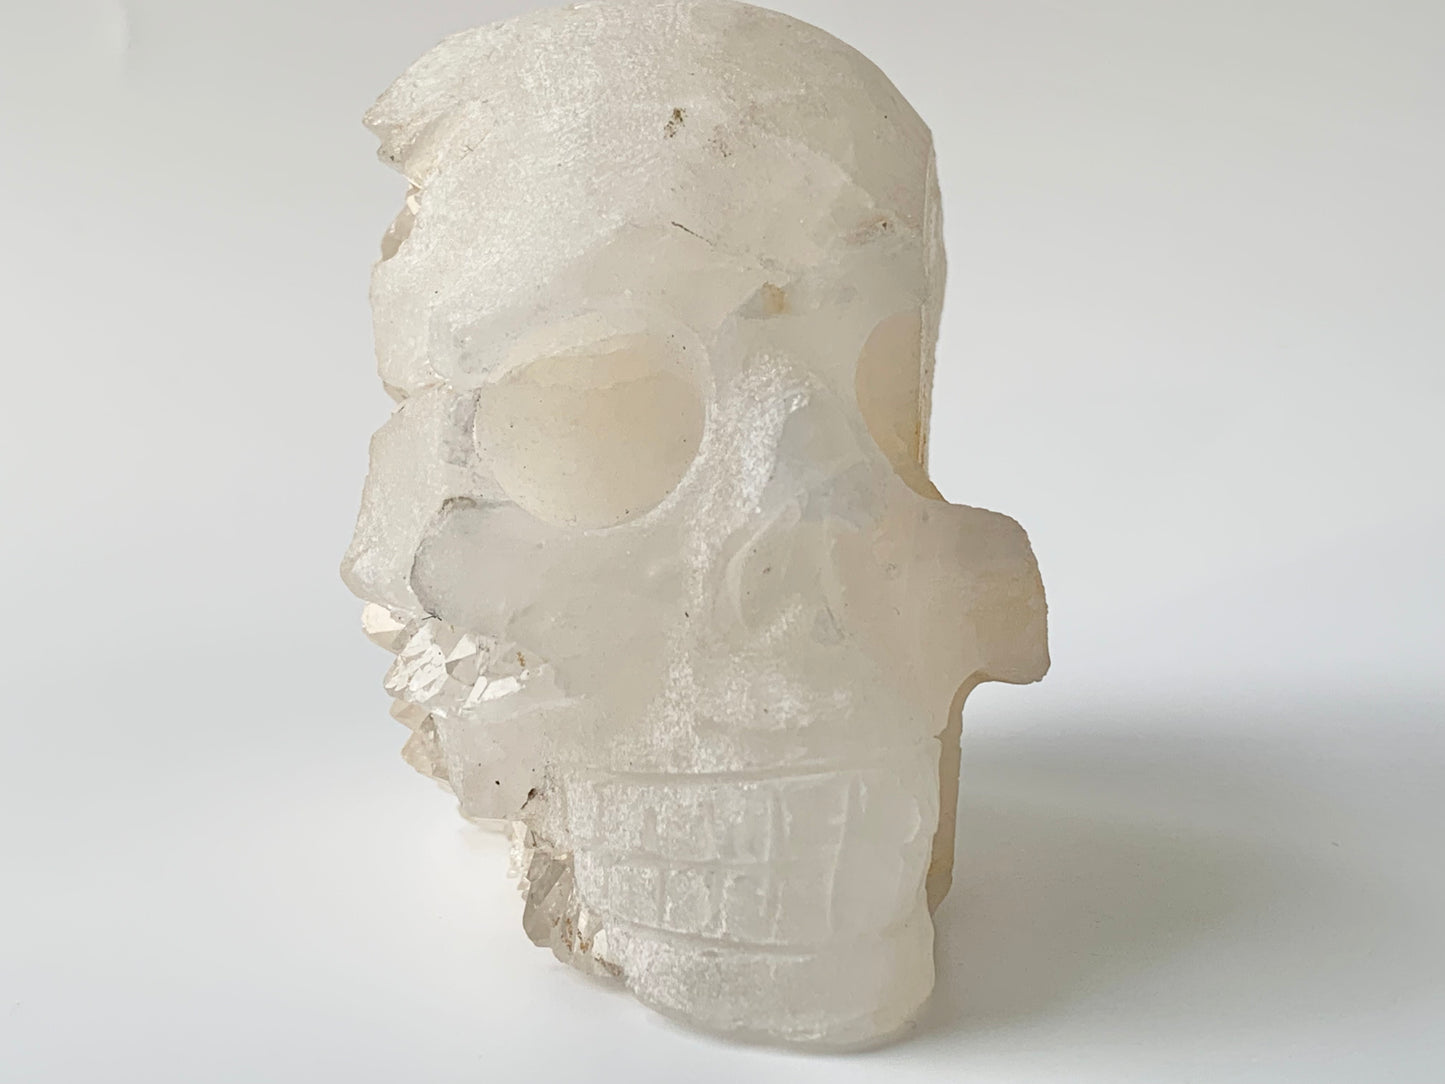 Quartz side Cluster Skull, front side chunk gone